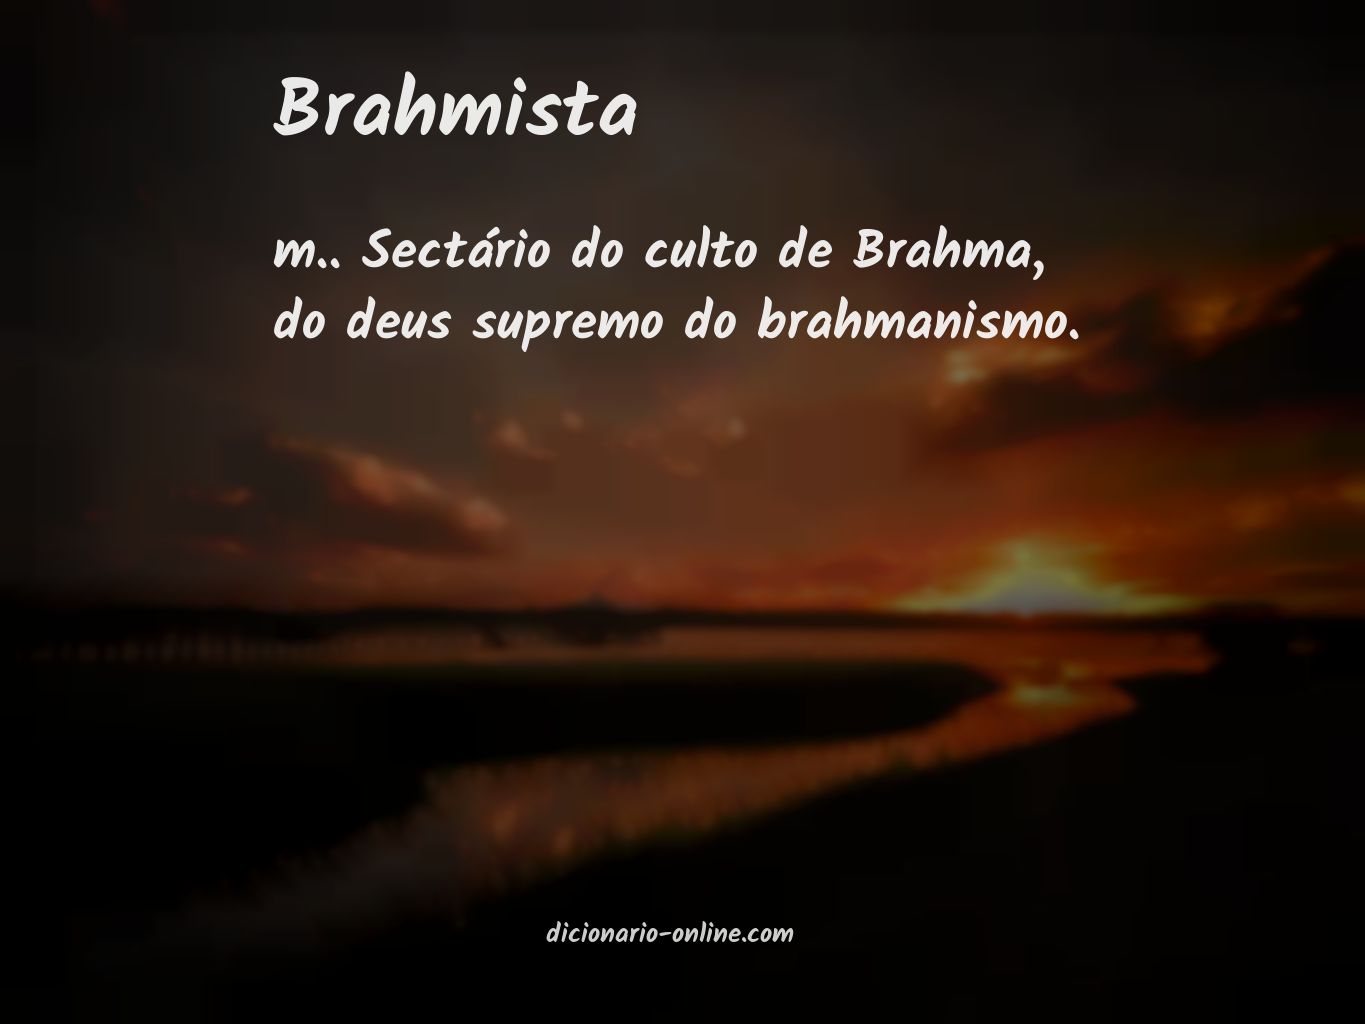 Significado de brahmista